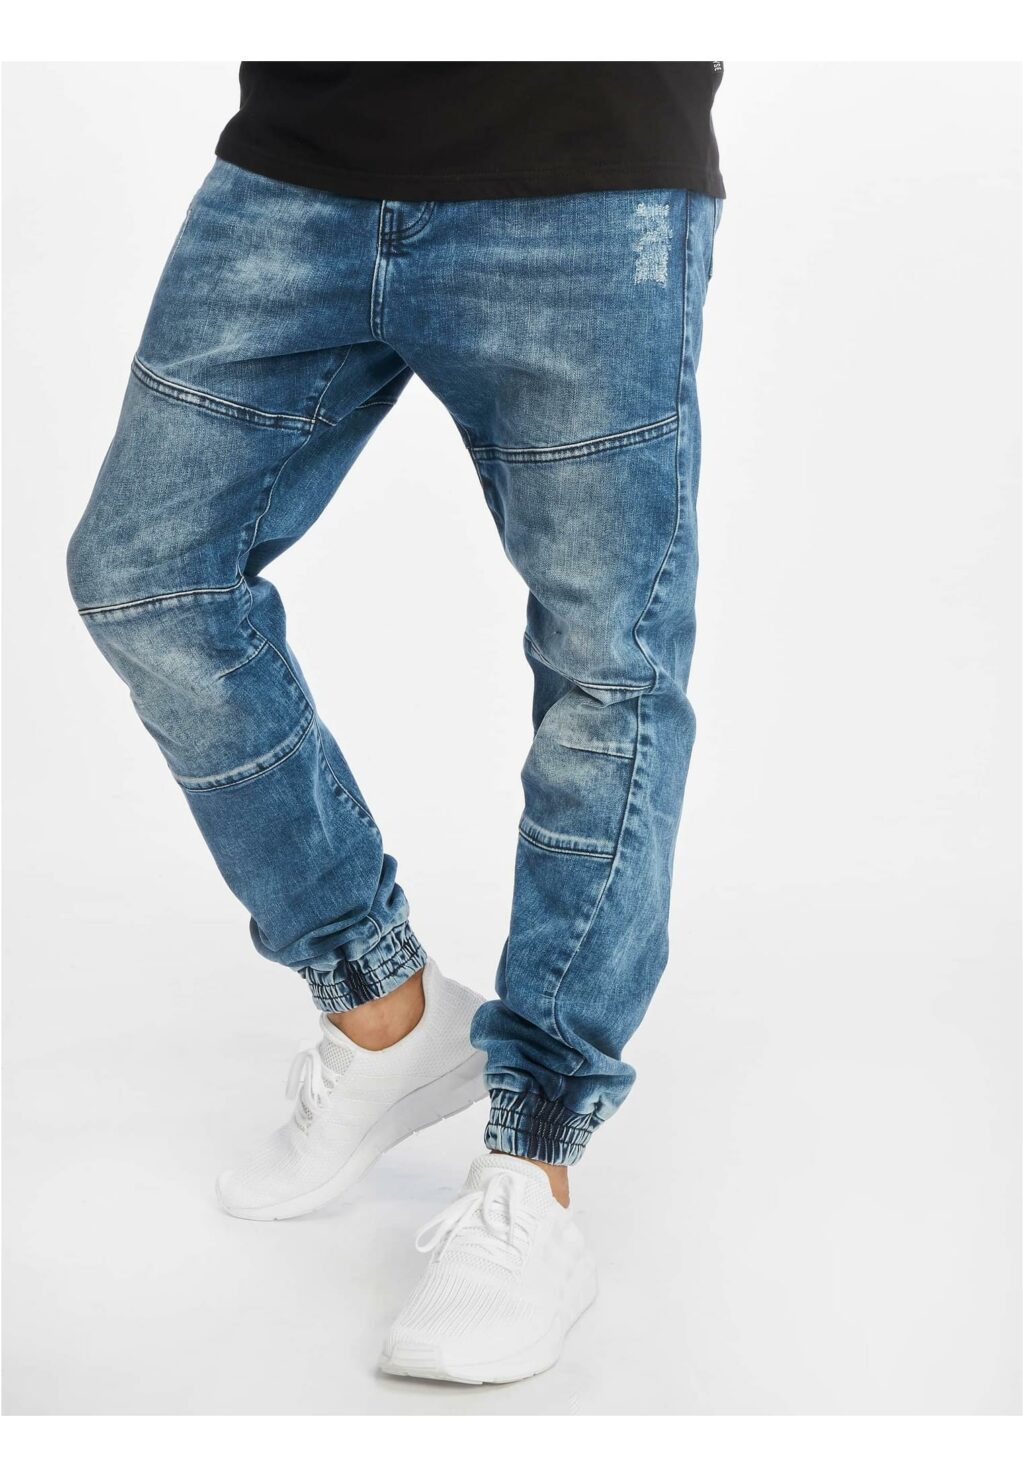 Straight Fit Jeans denimblue JRJSYGZ11